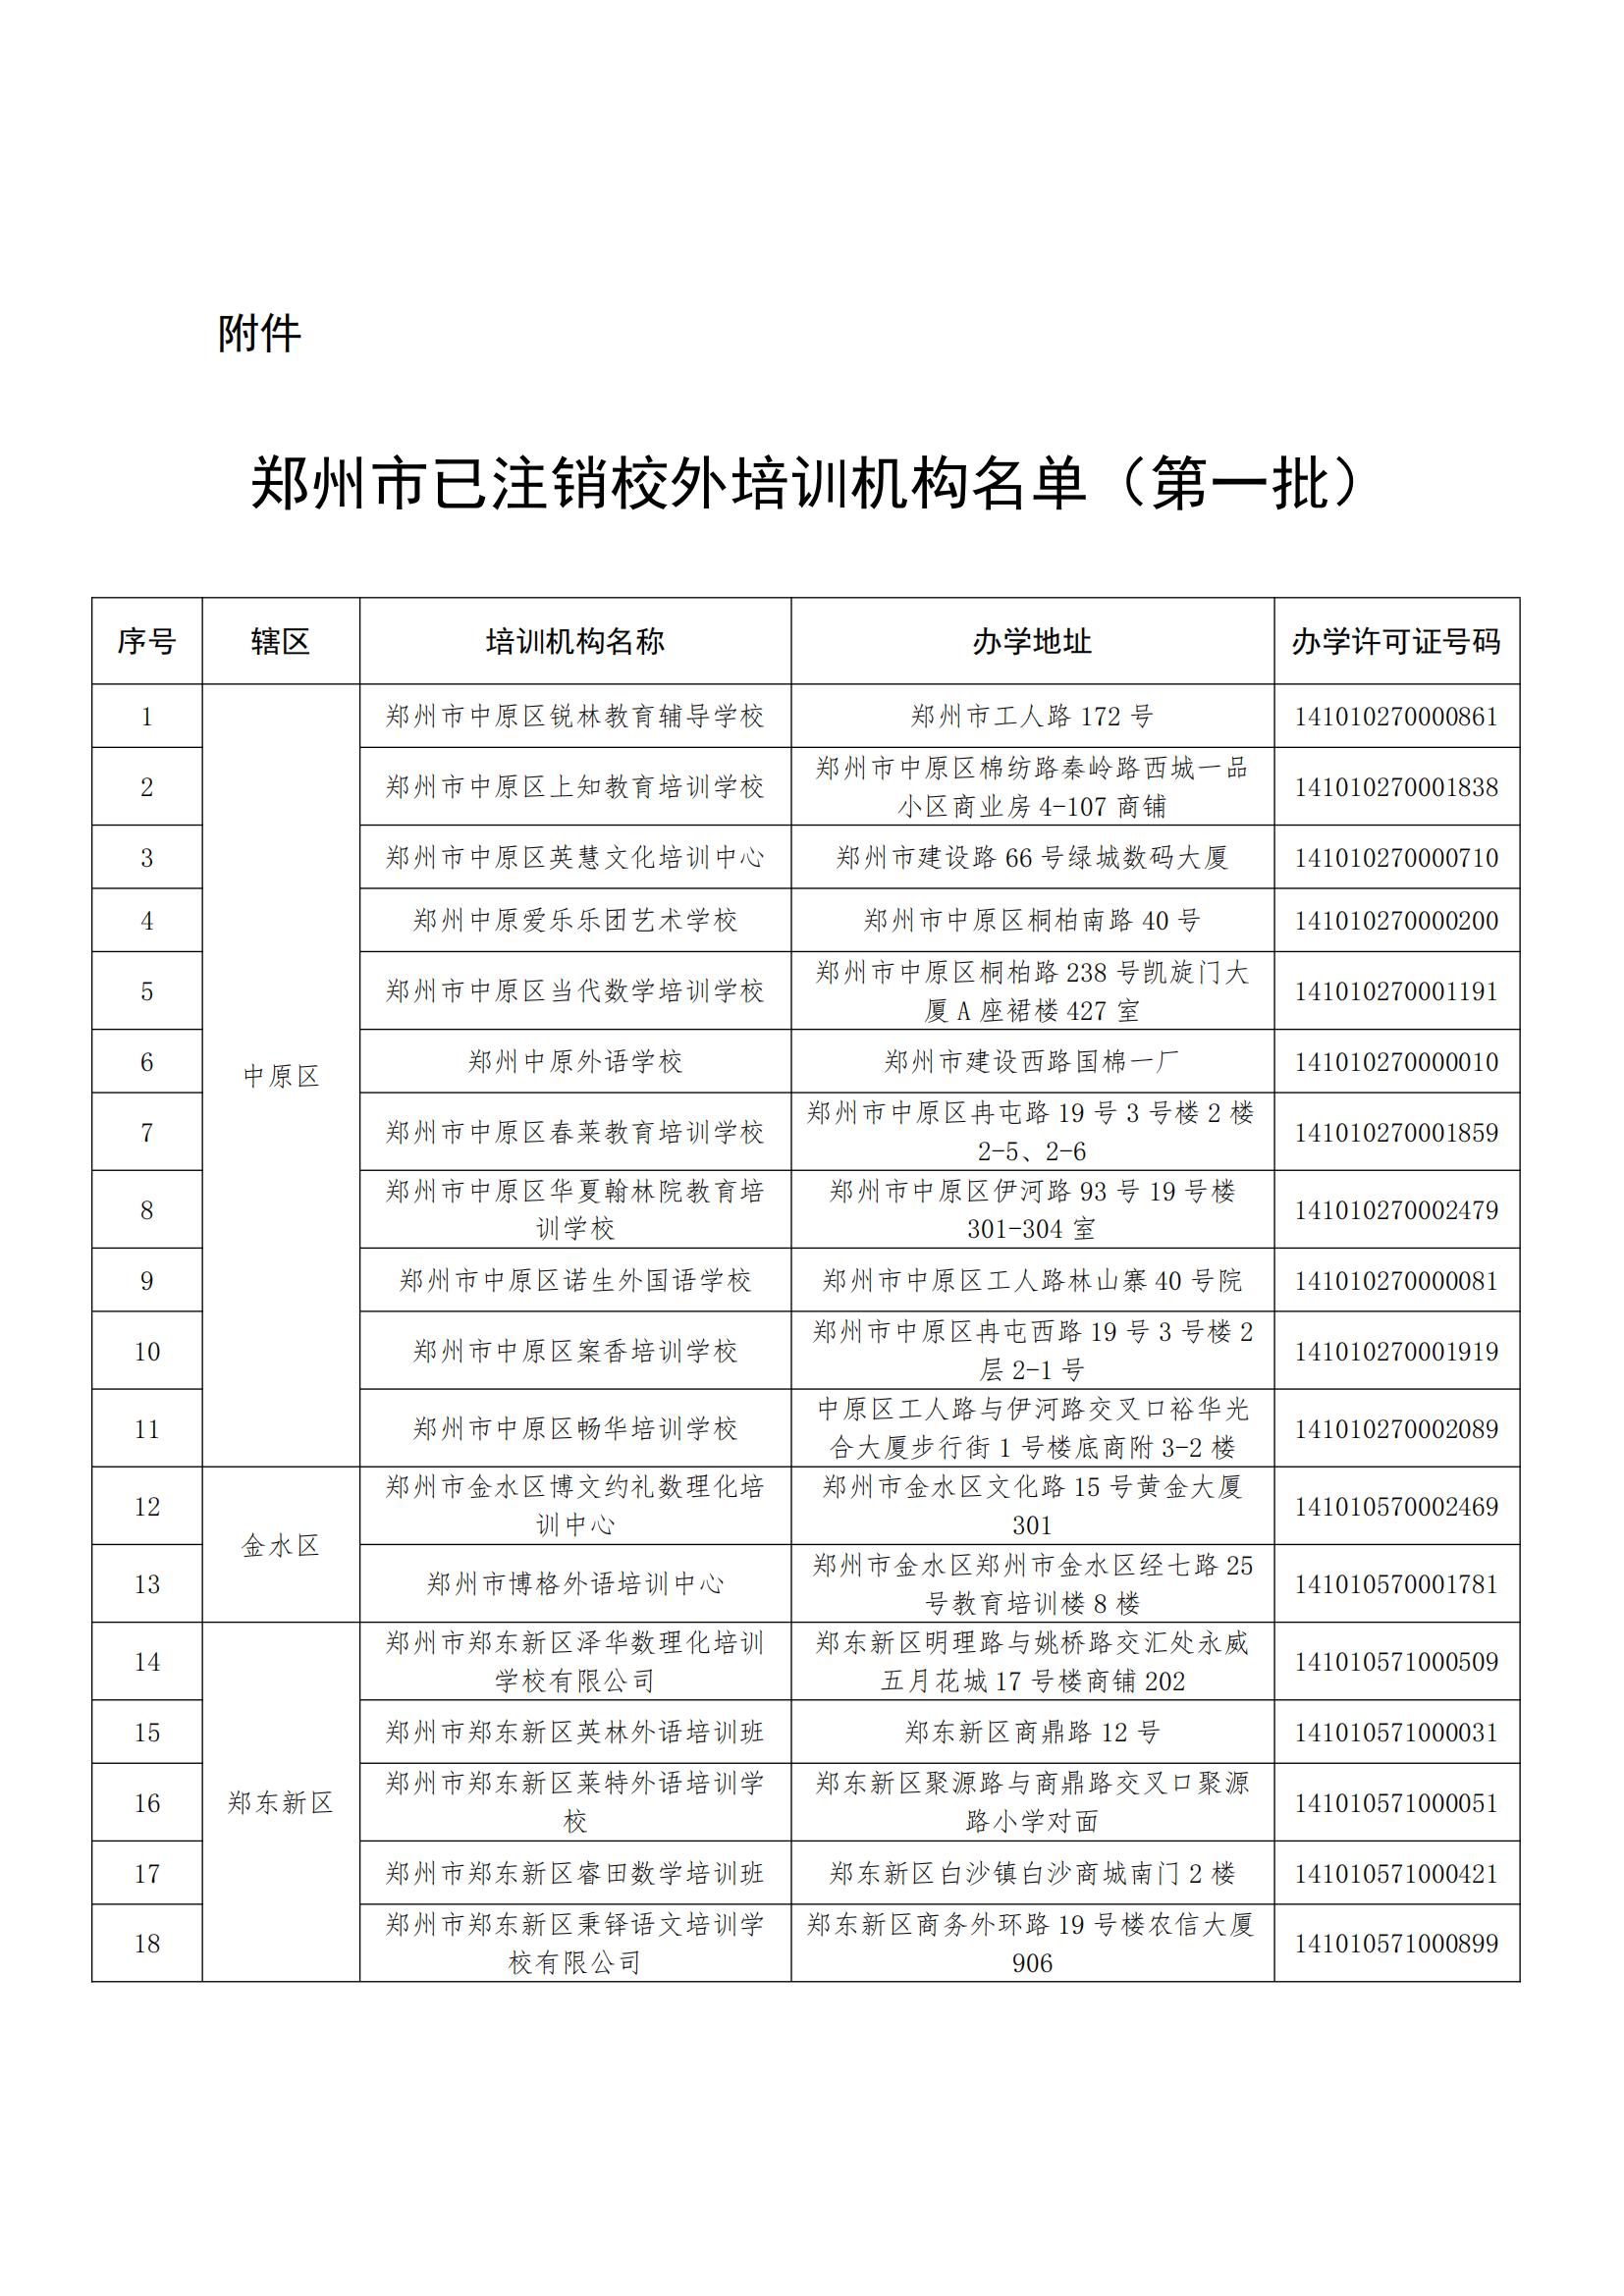 郑州市教育局公布61家已注销校外培训机构名单